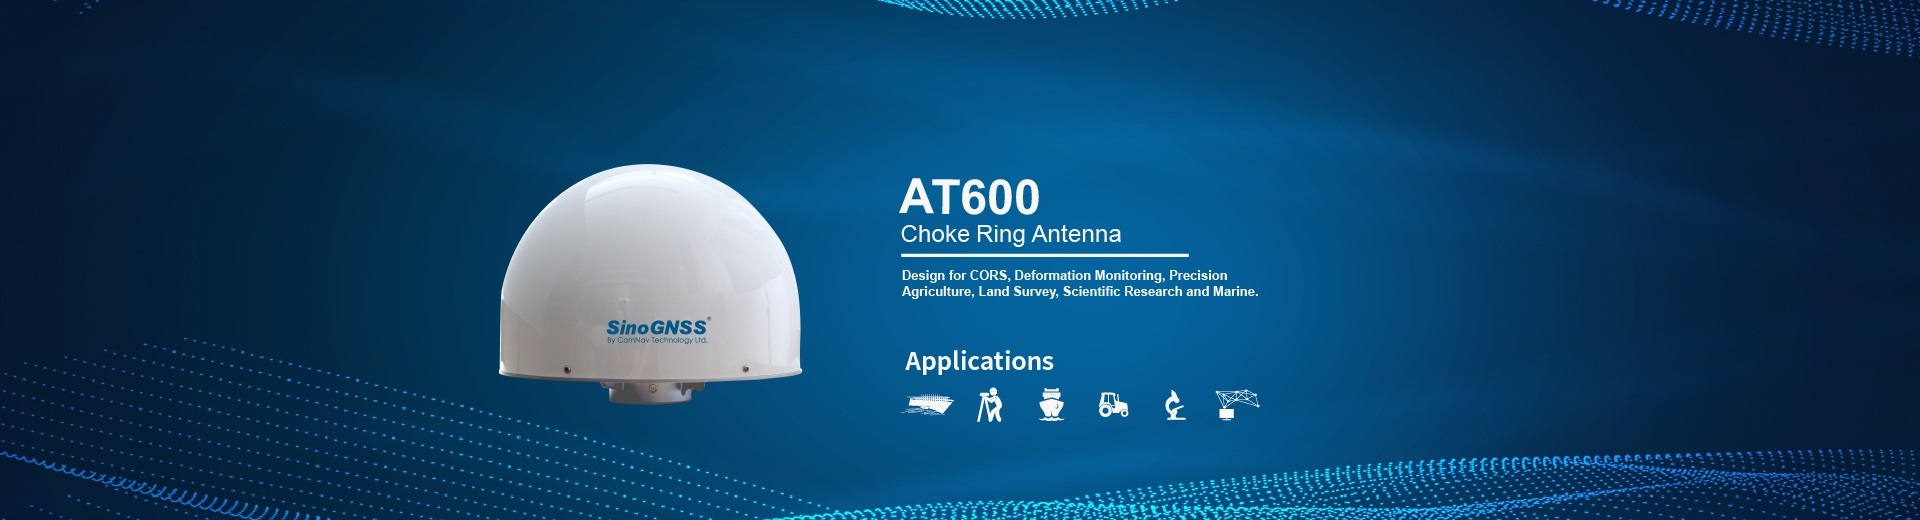 AT600 Choke Ring Antenna